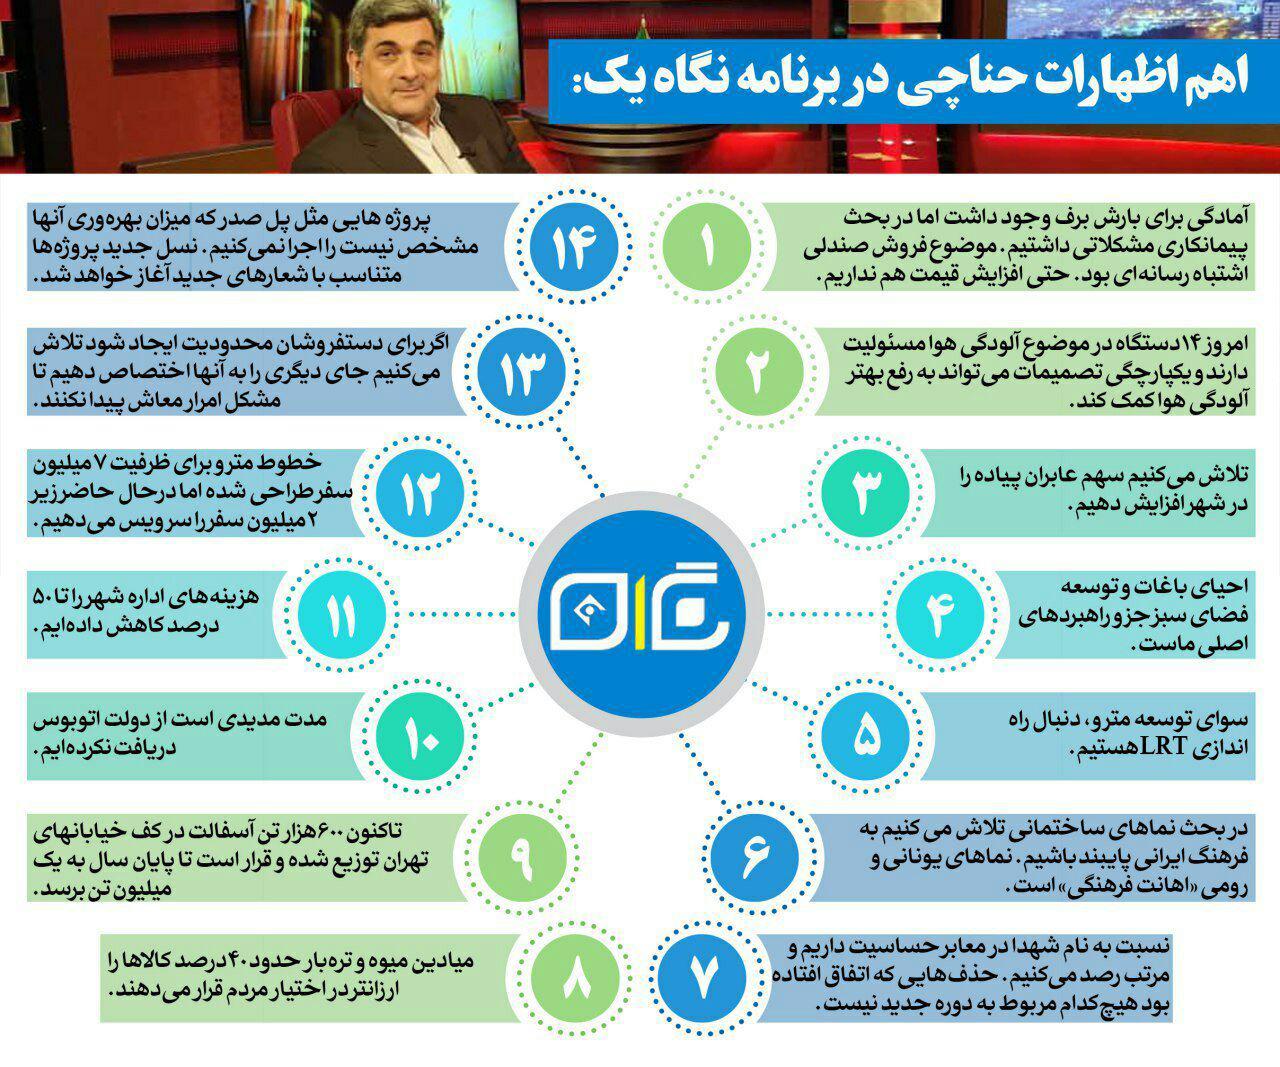 محورهای مهمی که شهردار تهران در برنامه نگاه یک سیما به آنها پرداخت (+عکس)